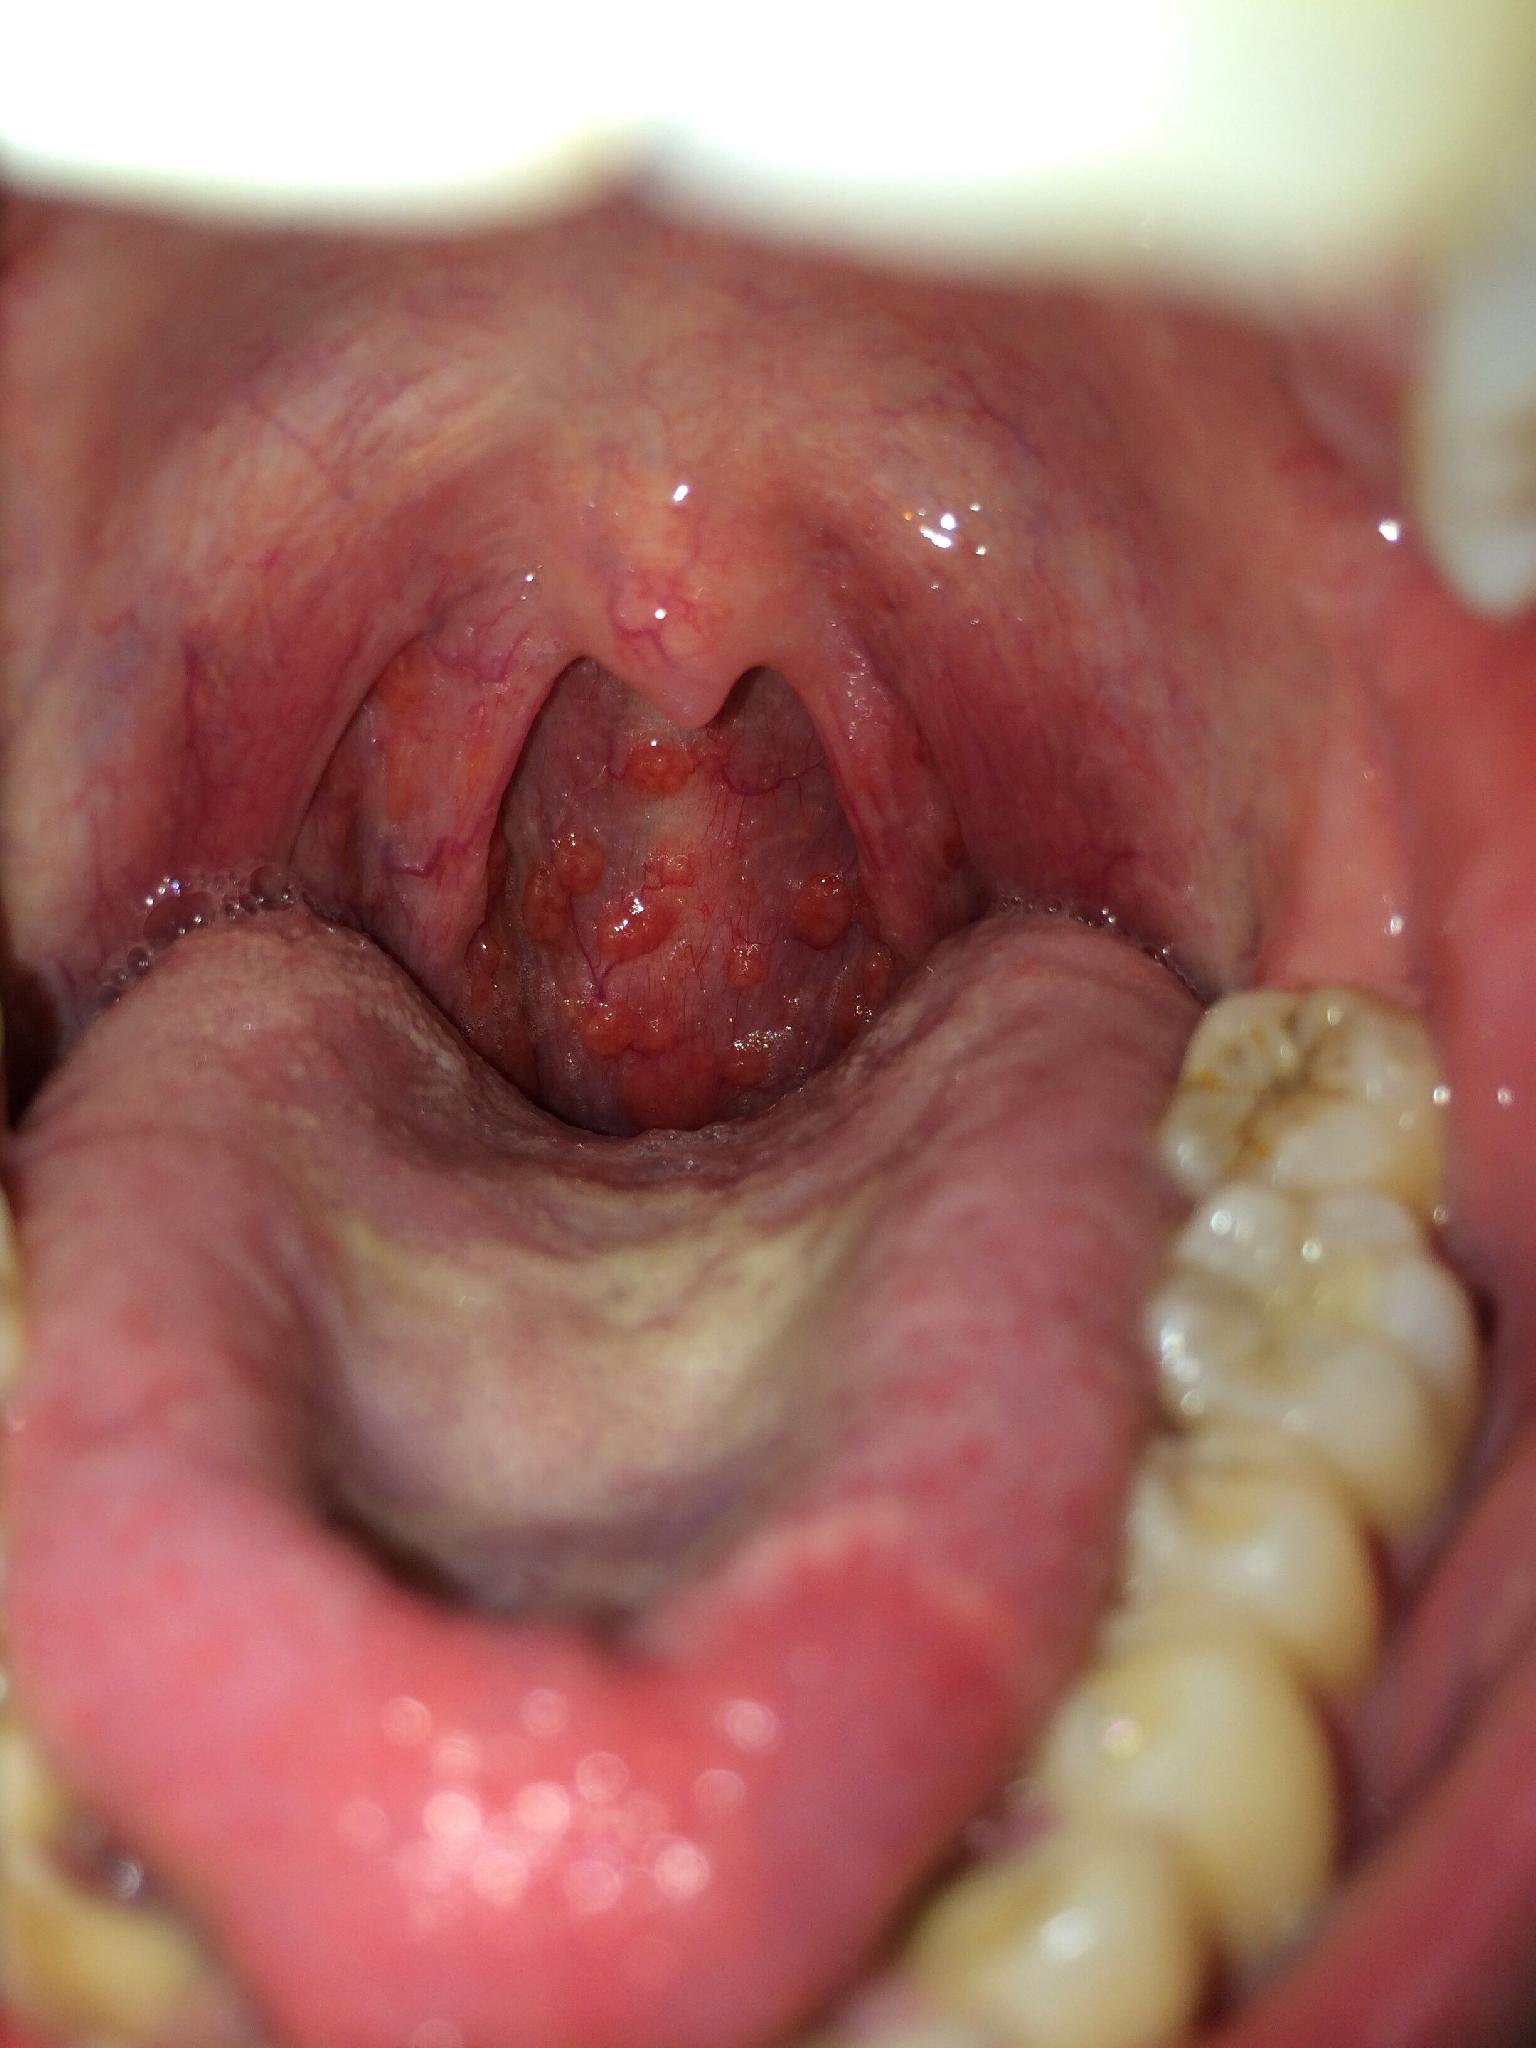 喉癌的早期症状图片图片